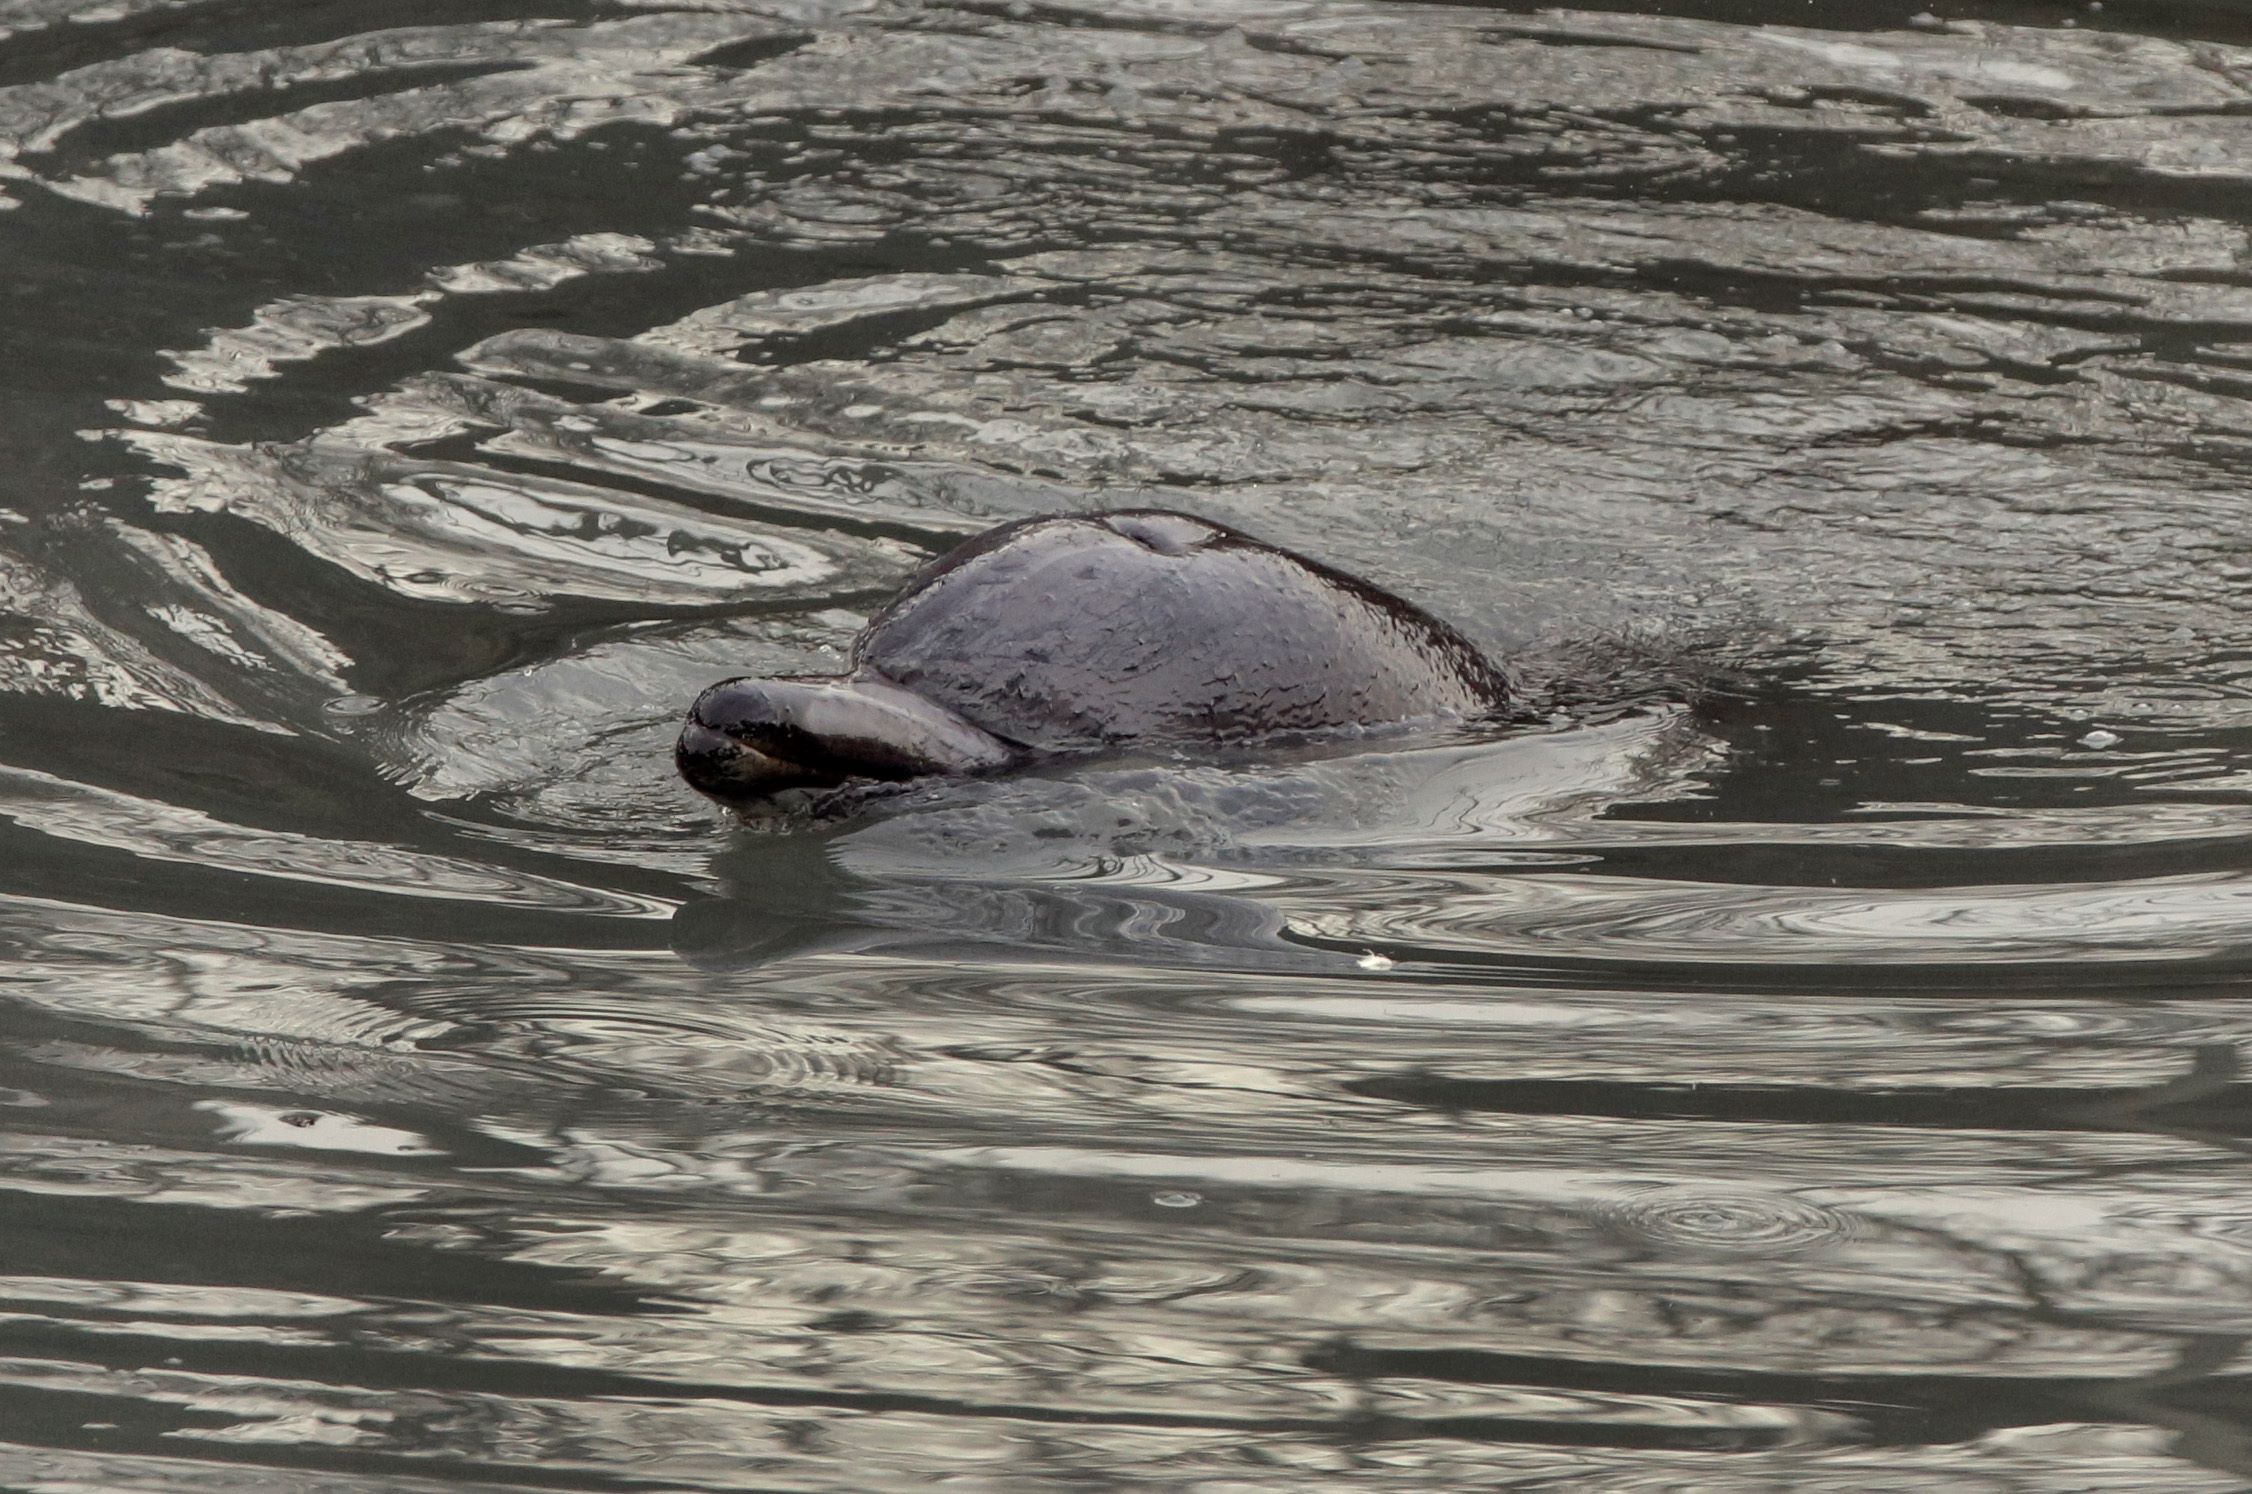 Βρετανία: Τουλάχιστον 55 μαυροδέλφινα εξόκειλαν σε ένα νησί της Σκωτίας – 10 επιβίωσαν